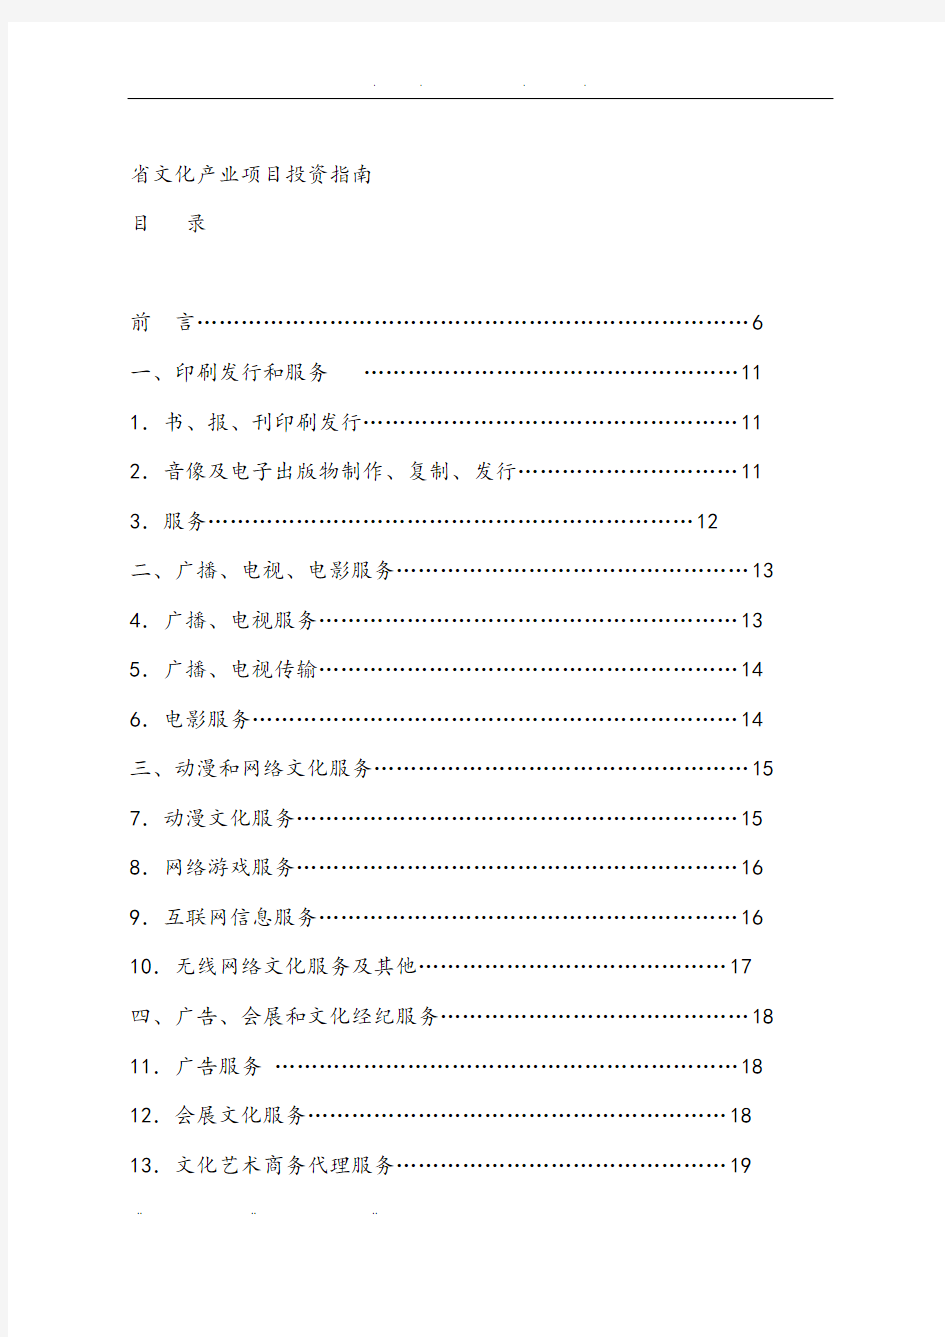 浙江省文化产业项目投资的指南手册范本